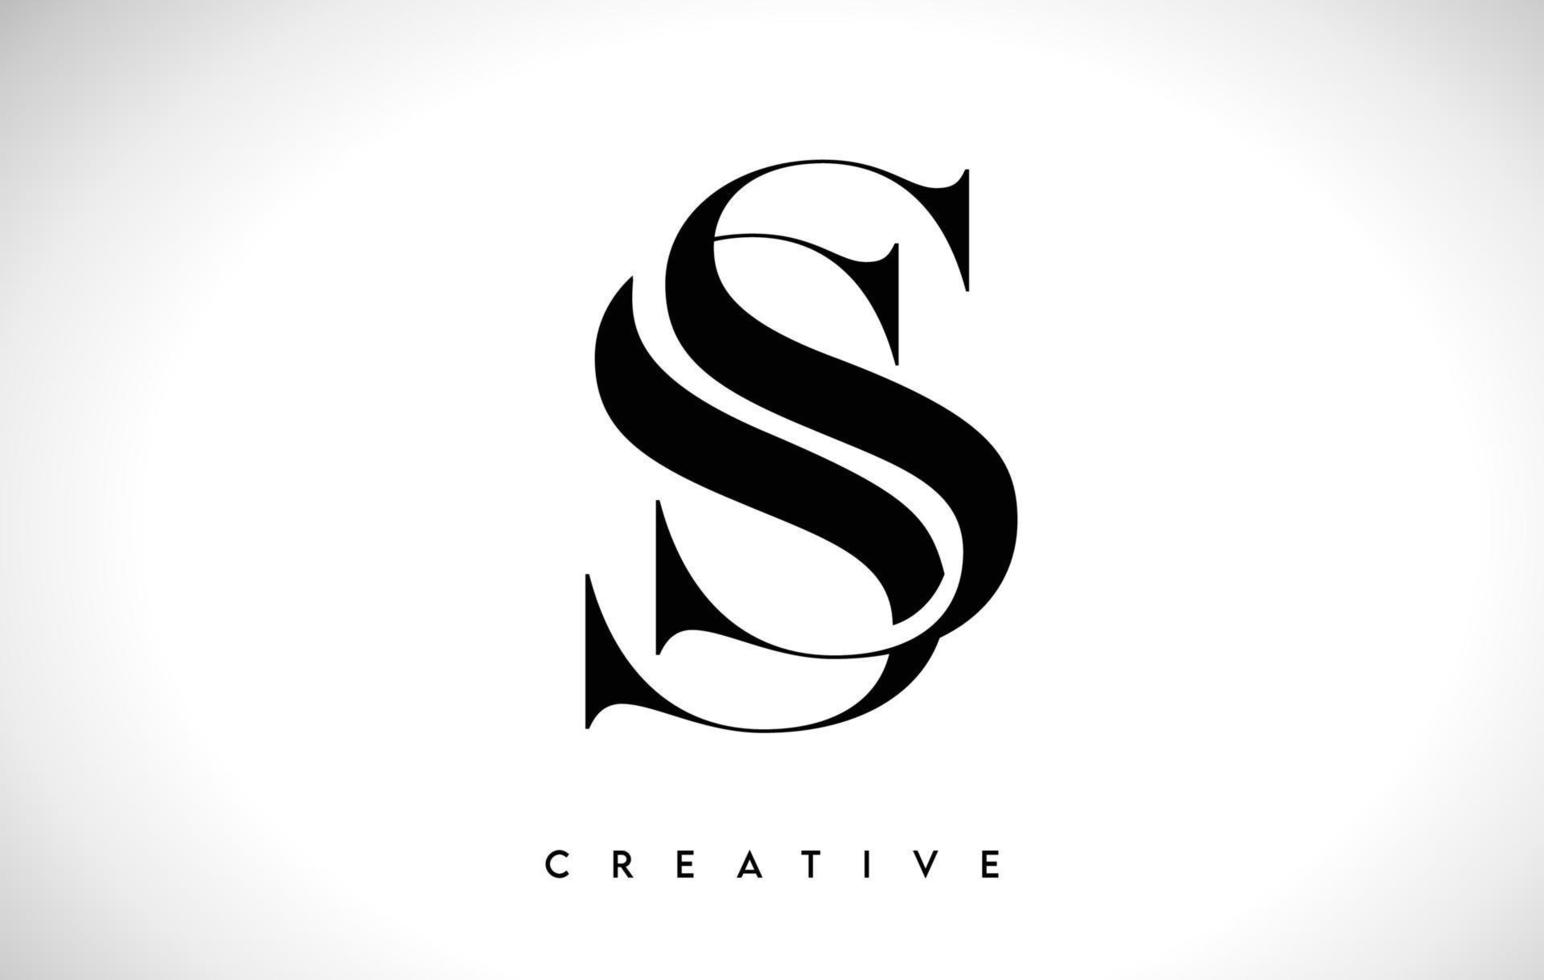 design de logotipo de carta artística ss com fonte serif em cores preto e branco ilustração vetorial vetor